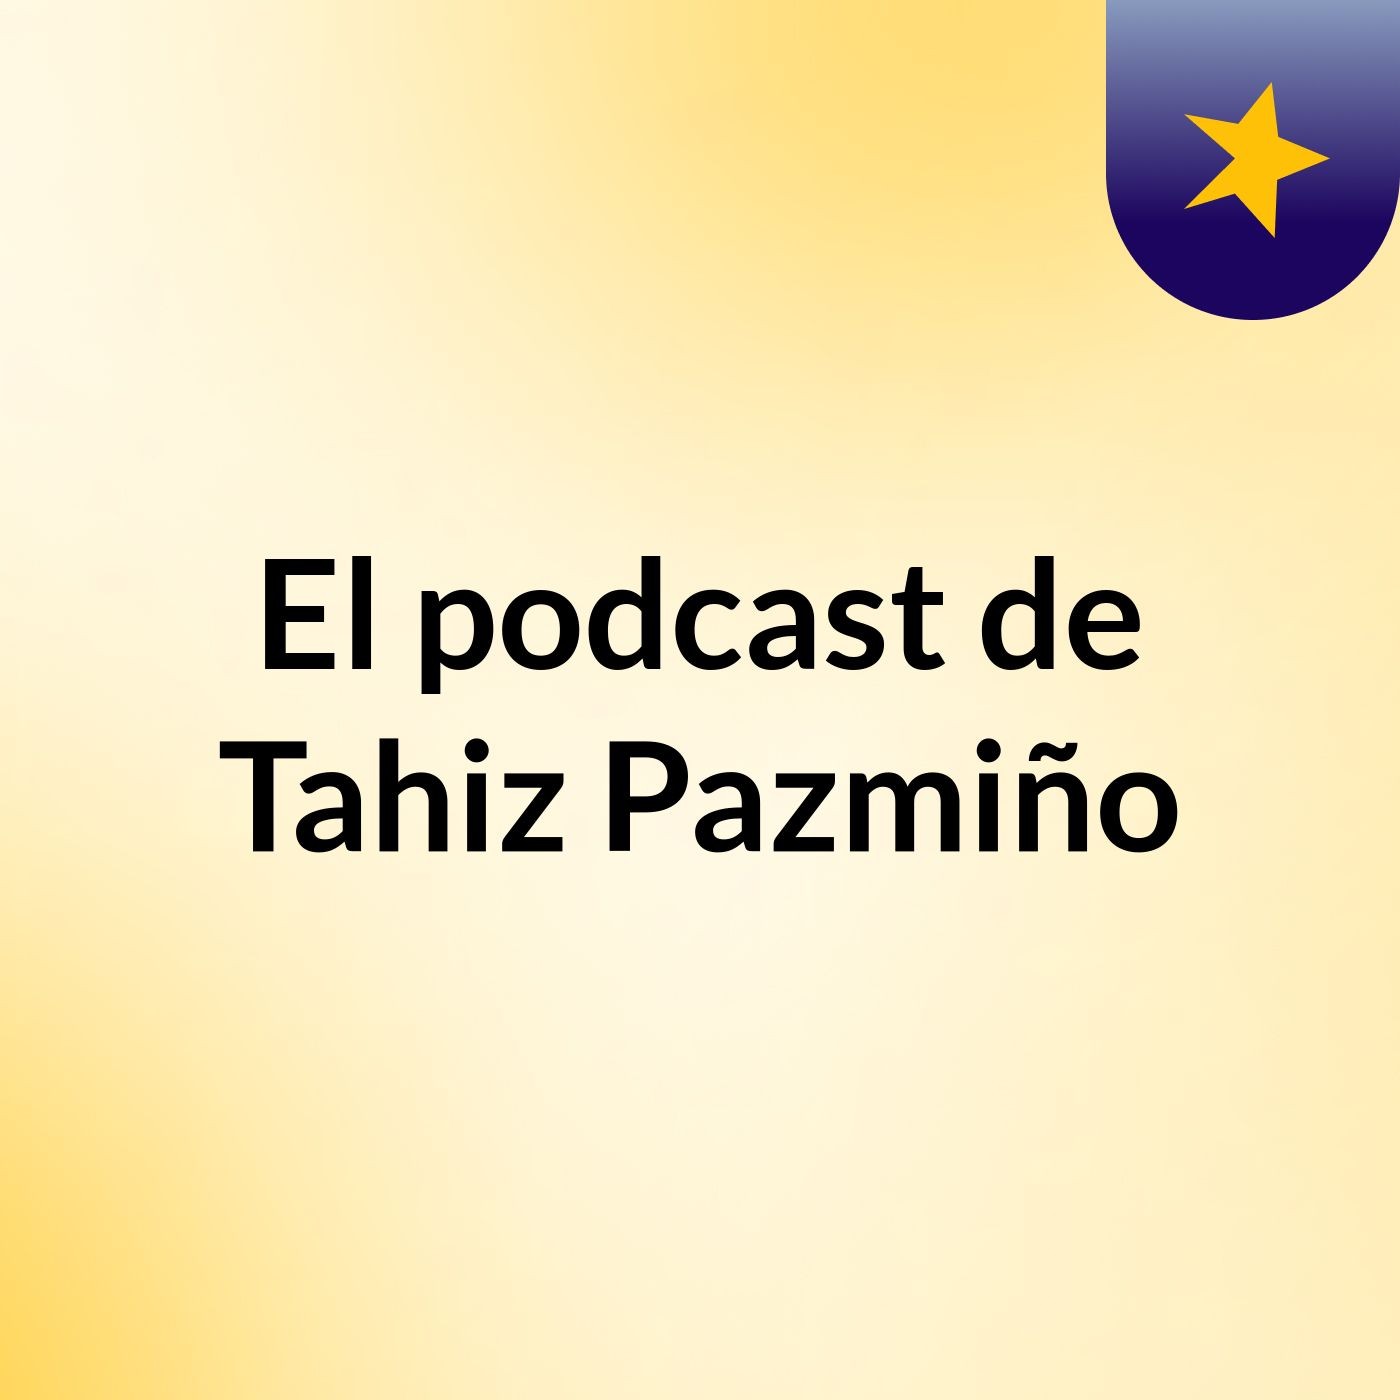 El podcast de Tahiz Pazmiño